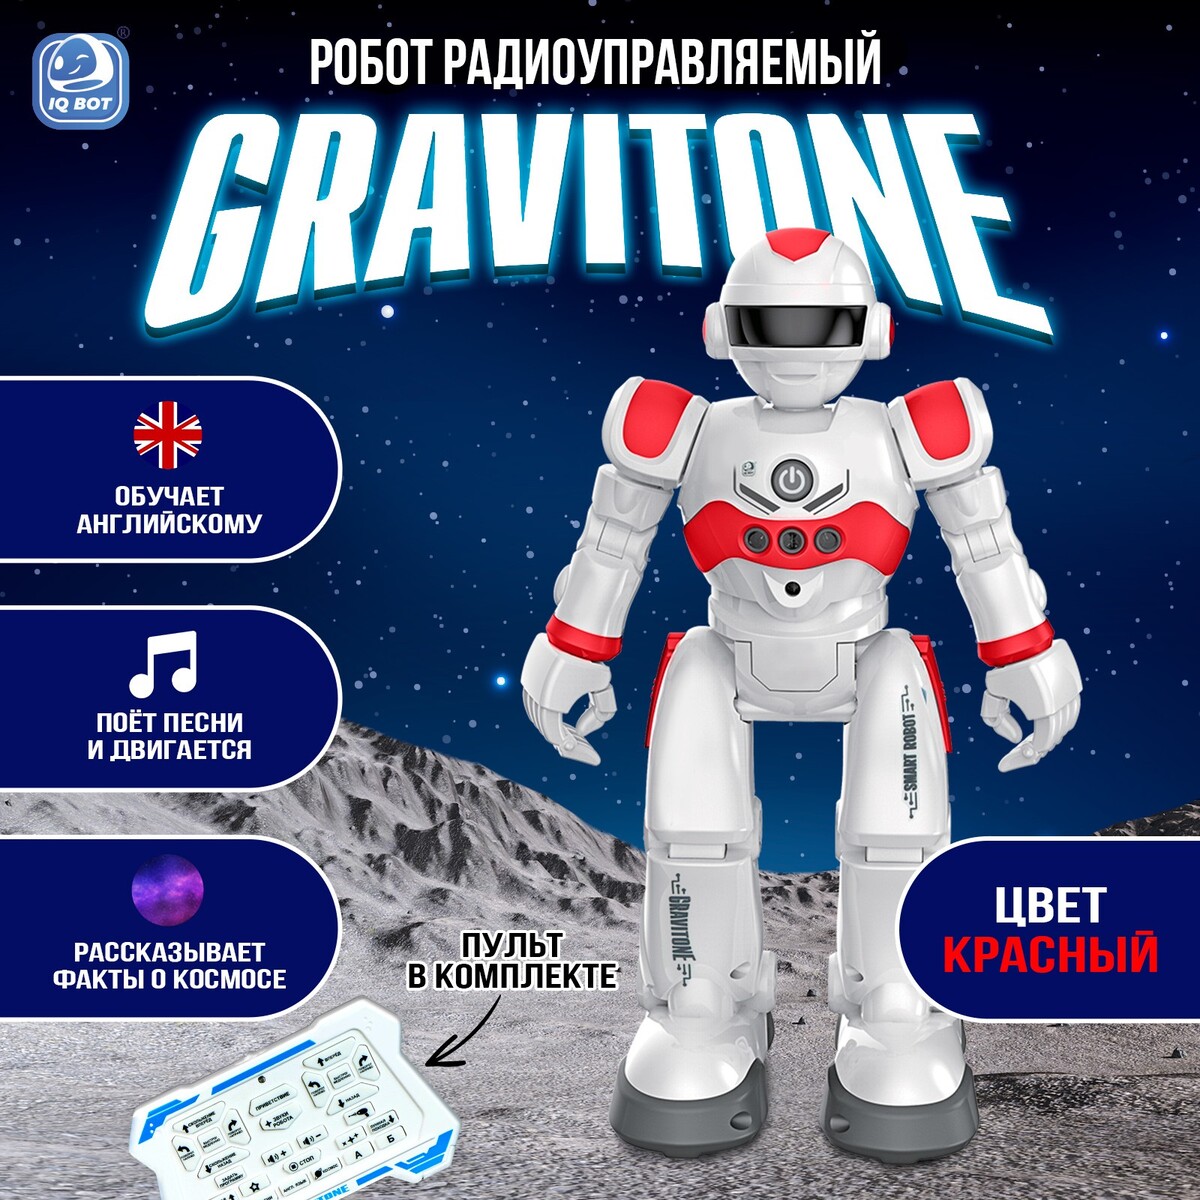 Робот радиоуправляемый iq bot gravitone, русское озвучивание, цвет красный попробуй время еды